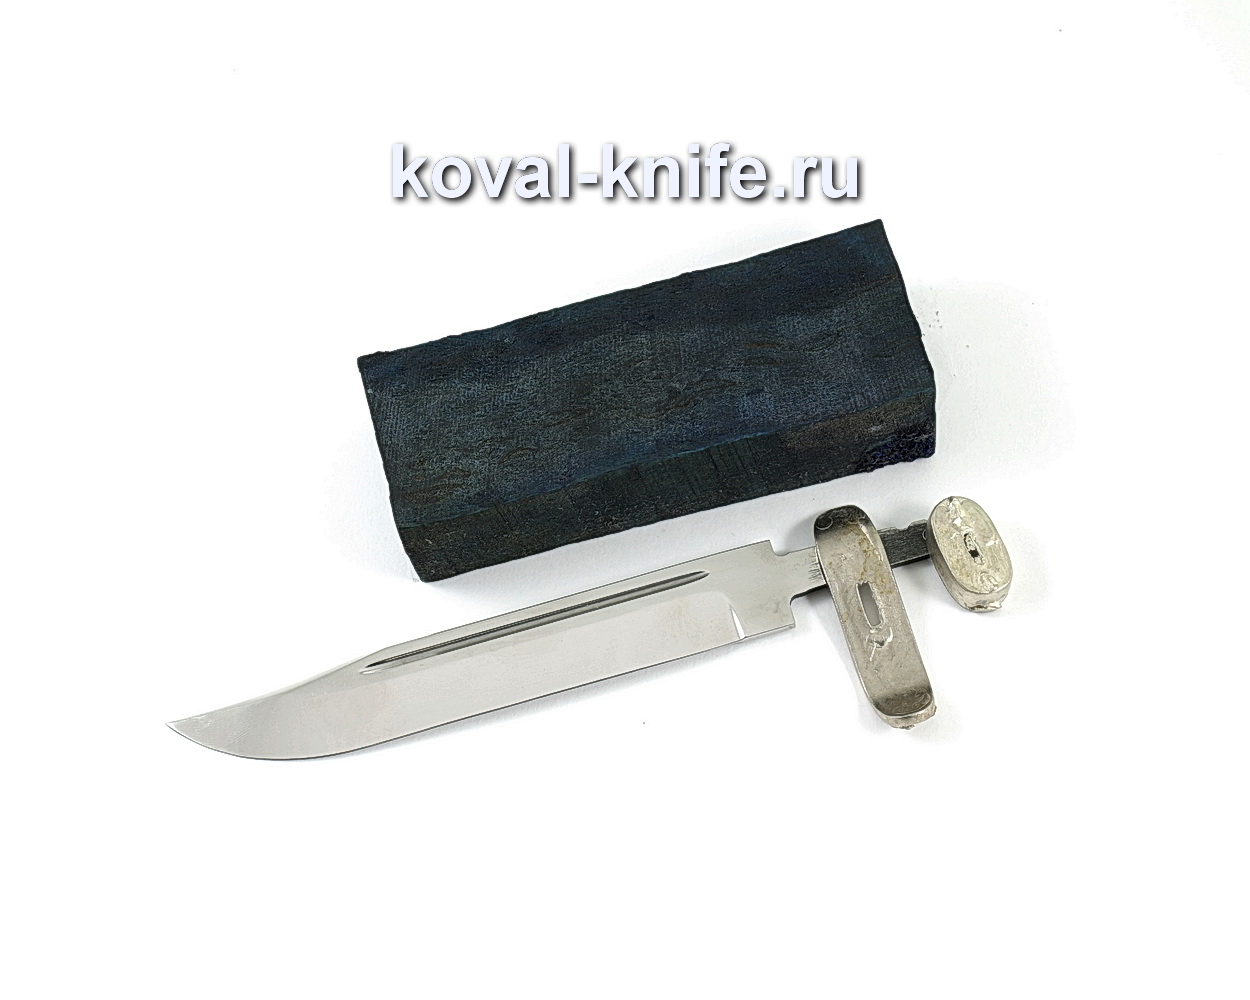 Комплект для ножа НР-40 2 (клинок кованая 95х18 3,5мм, литье 2шт., граб брусок)